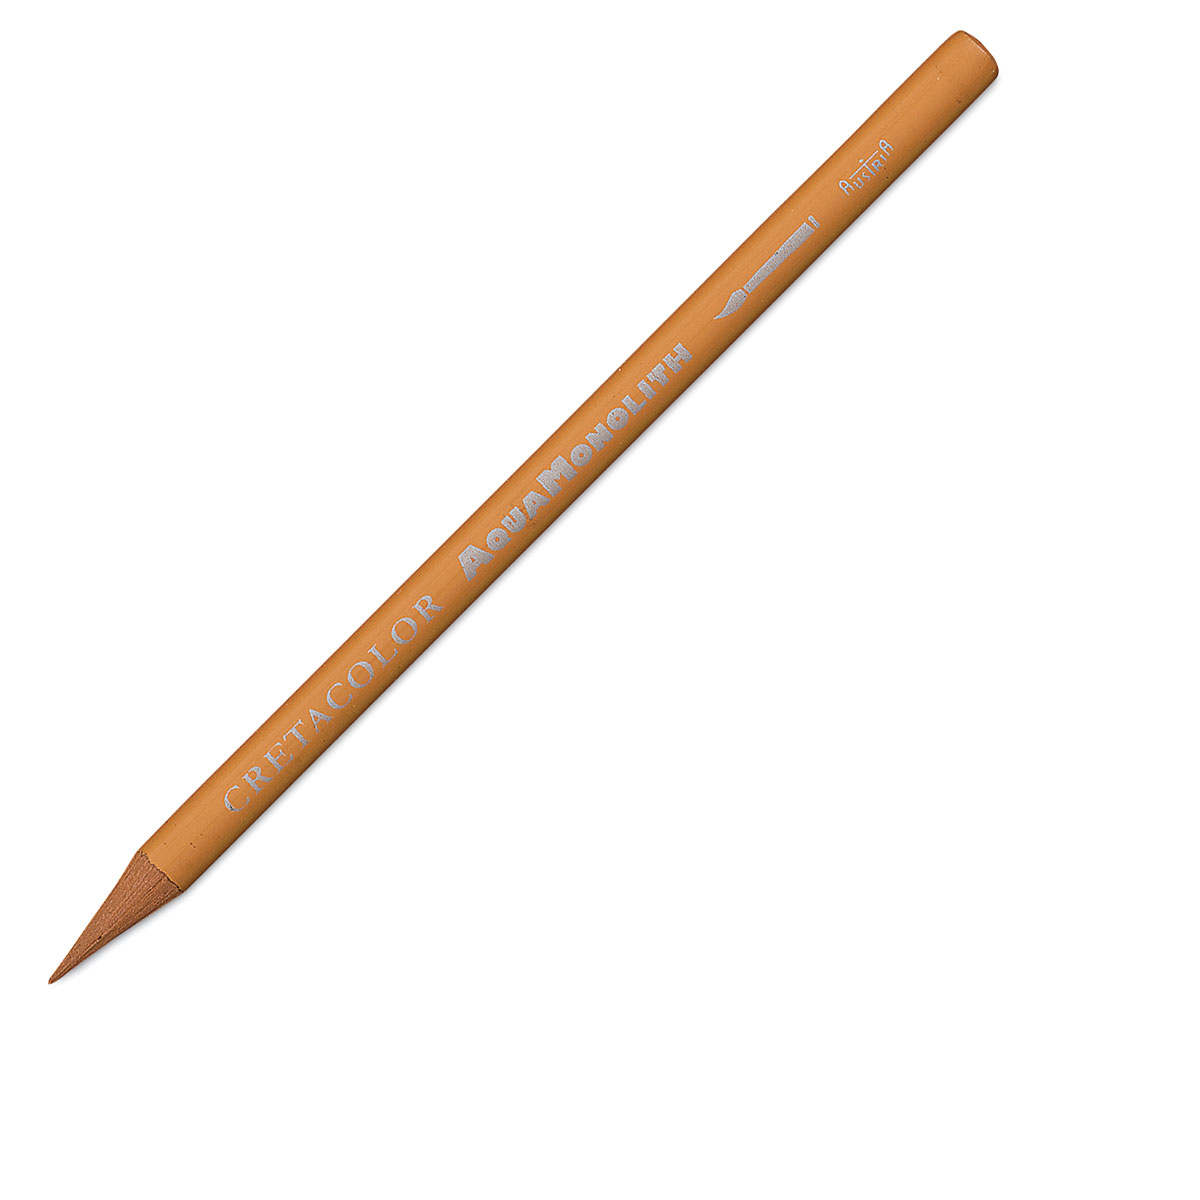 Cretacolor Monolith watercolor pencils